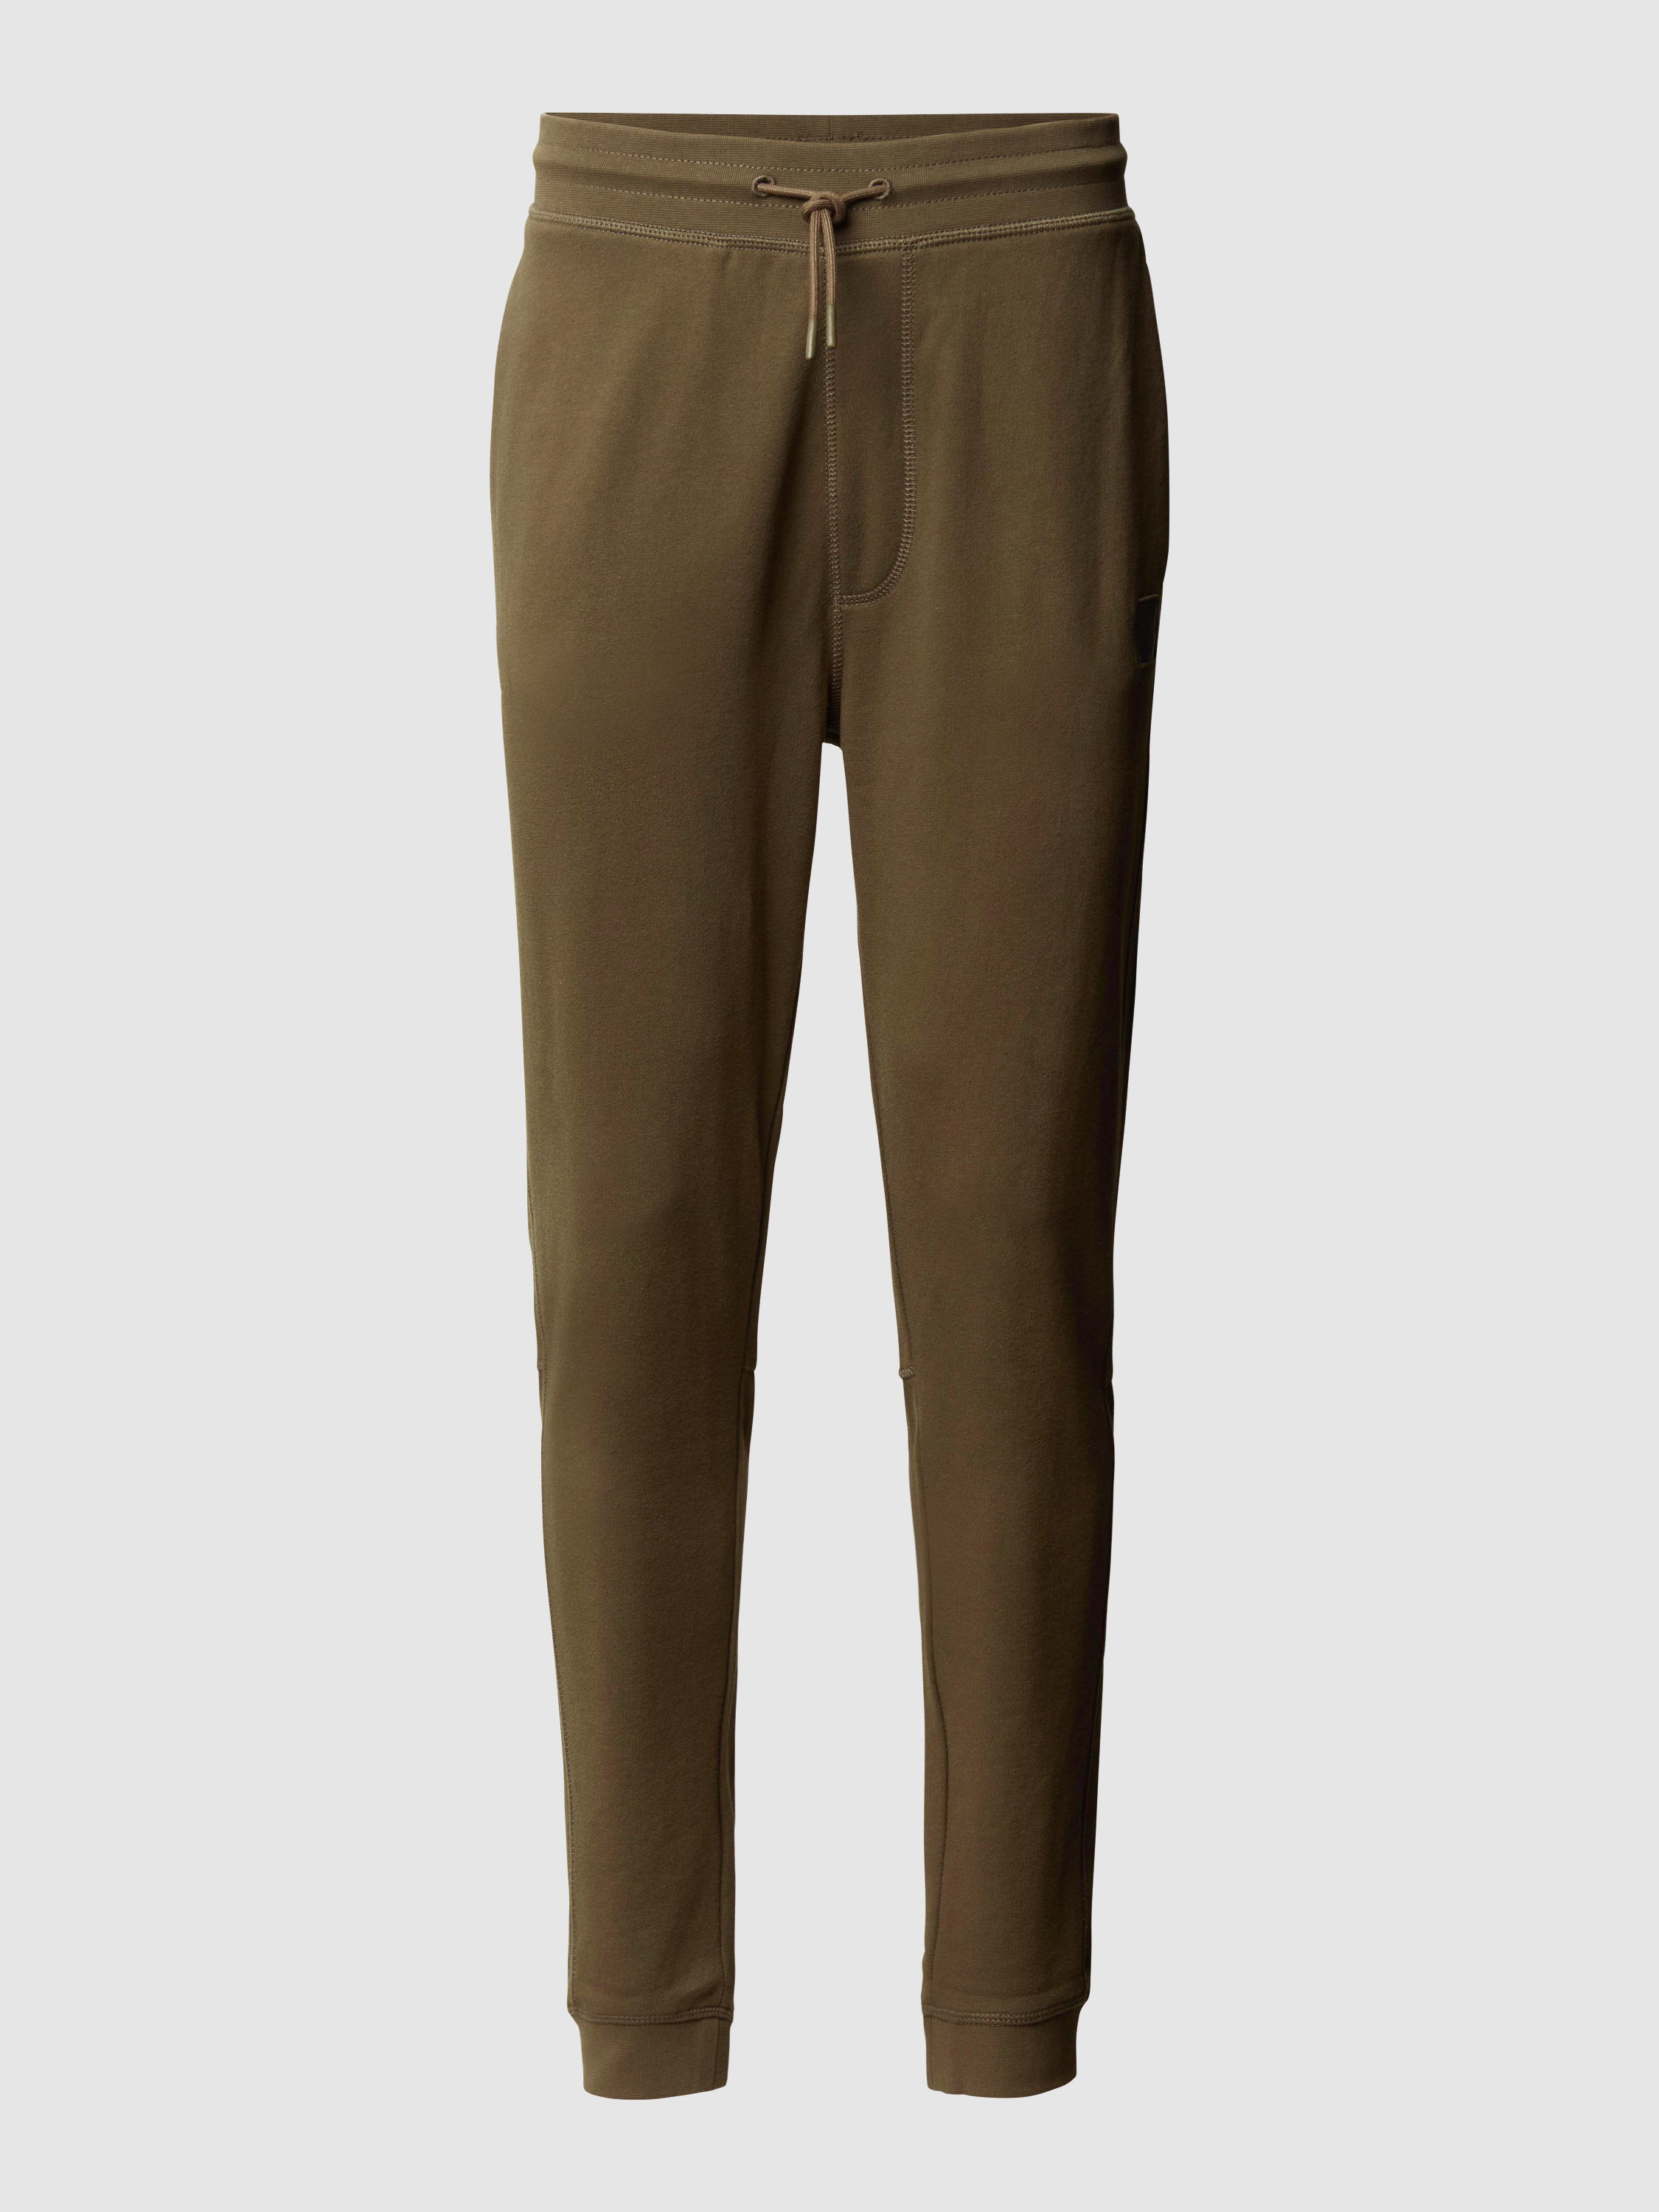 Спортивные брюки мужские Boss Orange 1403932 коричневые XL (доставка из-за рубежа)